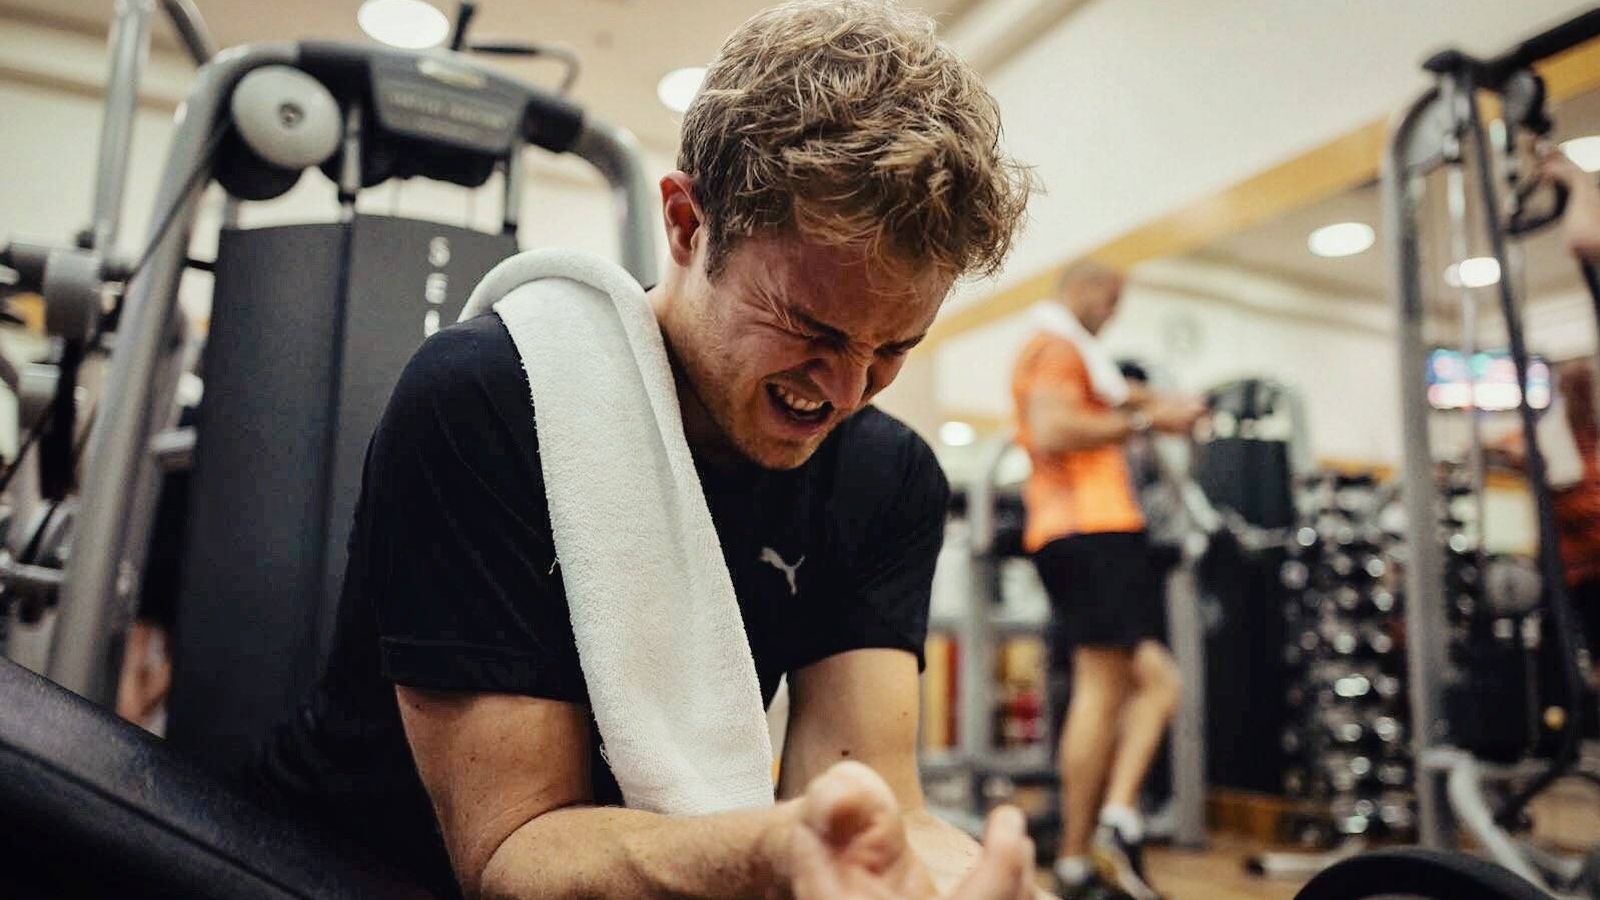 Foto: Nico Rosberg entrenando en el gimnasio (@nicorosberg).